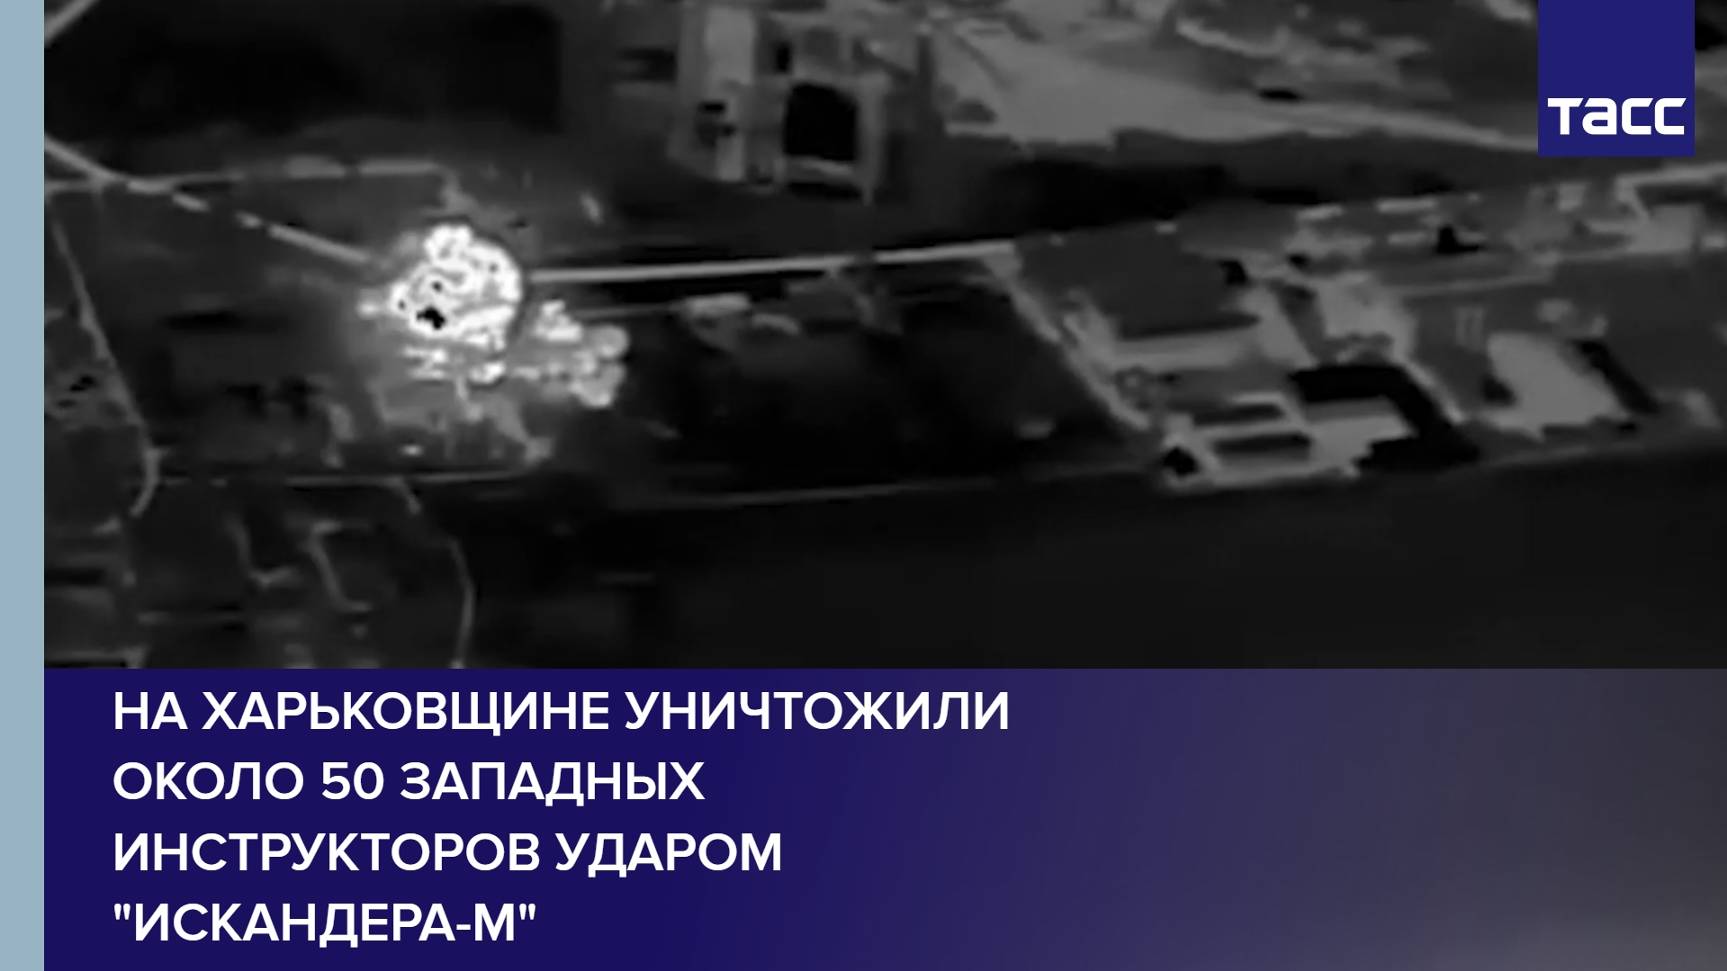 На Харьковщине уничтожили около 50 западных инструкторов ударом "Искандера-М"